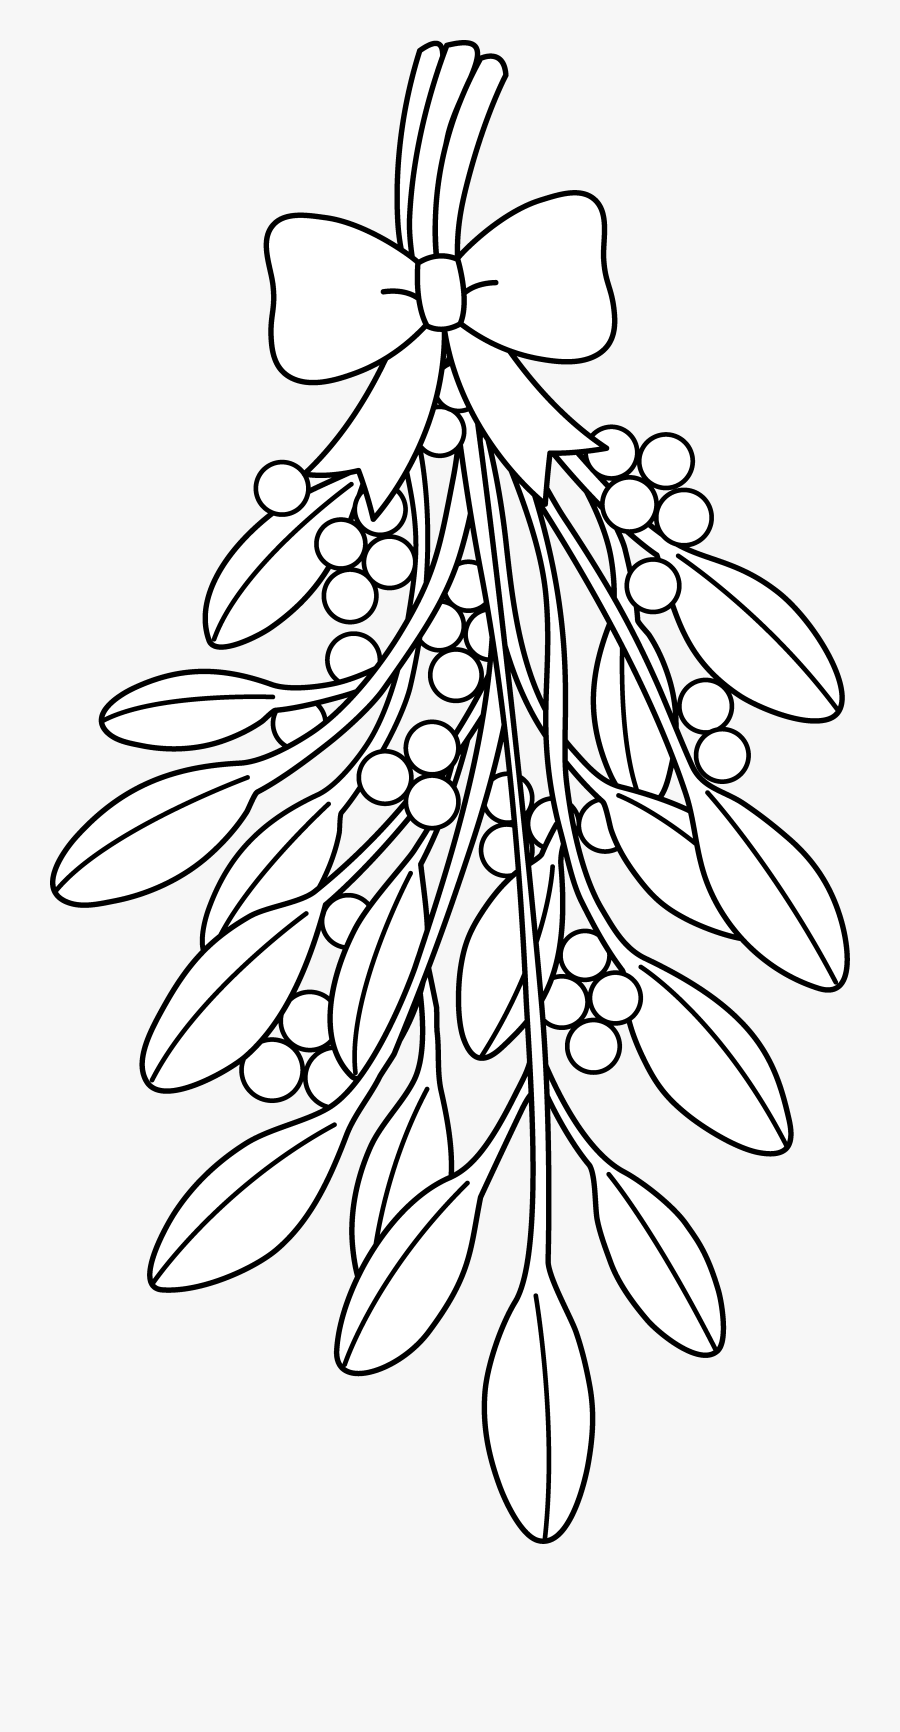 Mistletoe Clipart Sketches - Christmas Mistletoe Coloring Pages, Transparent Clipart